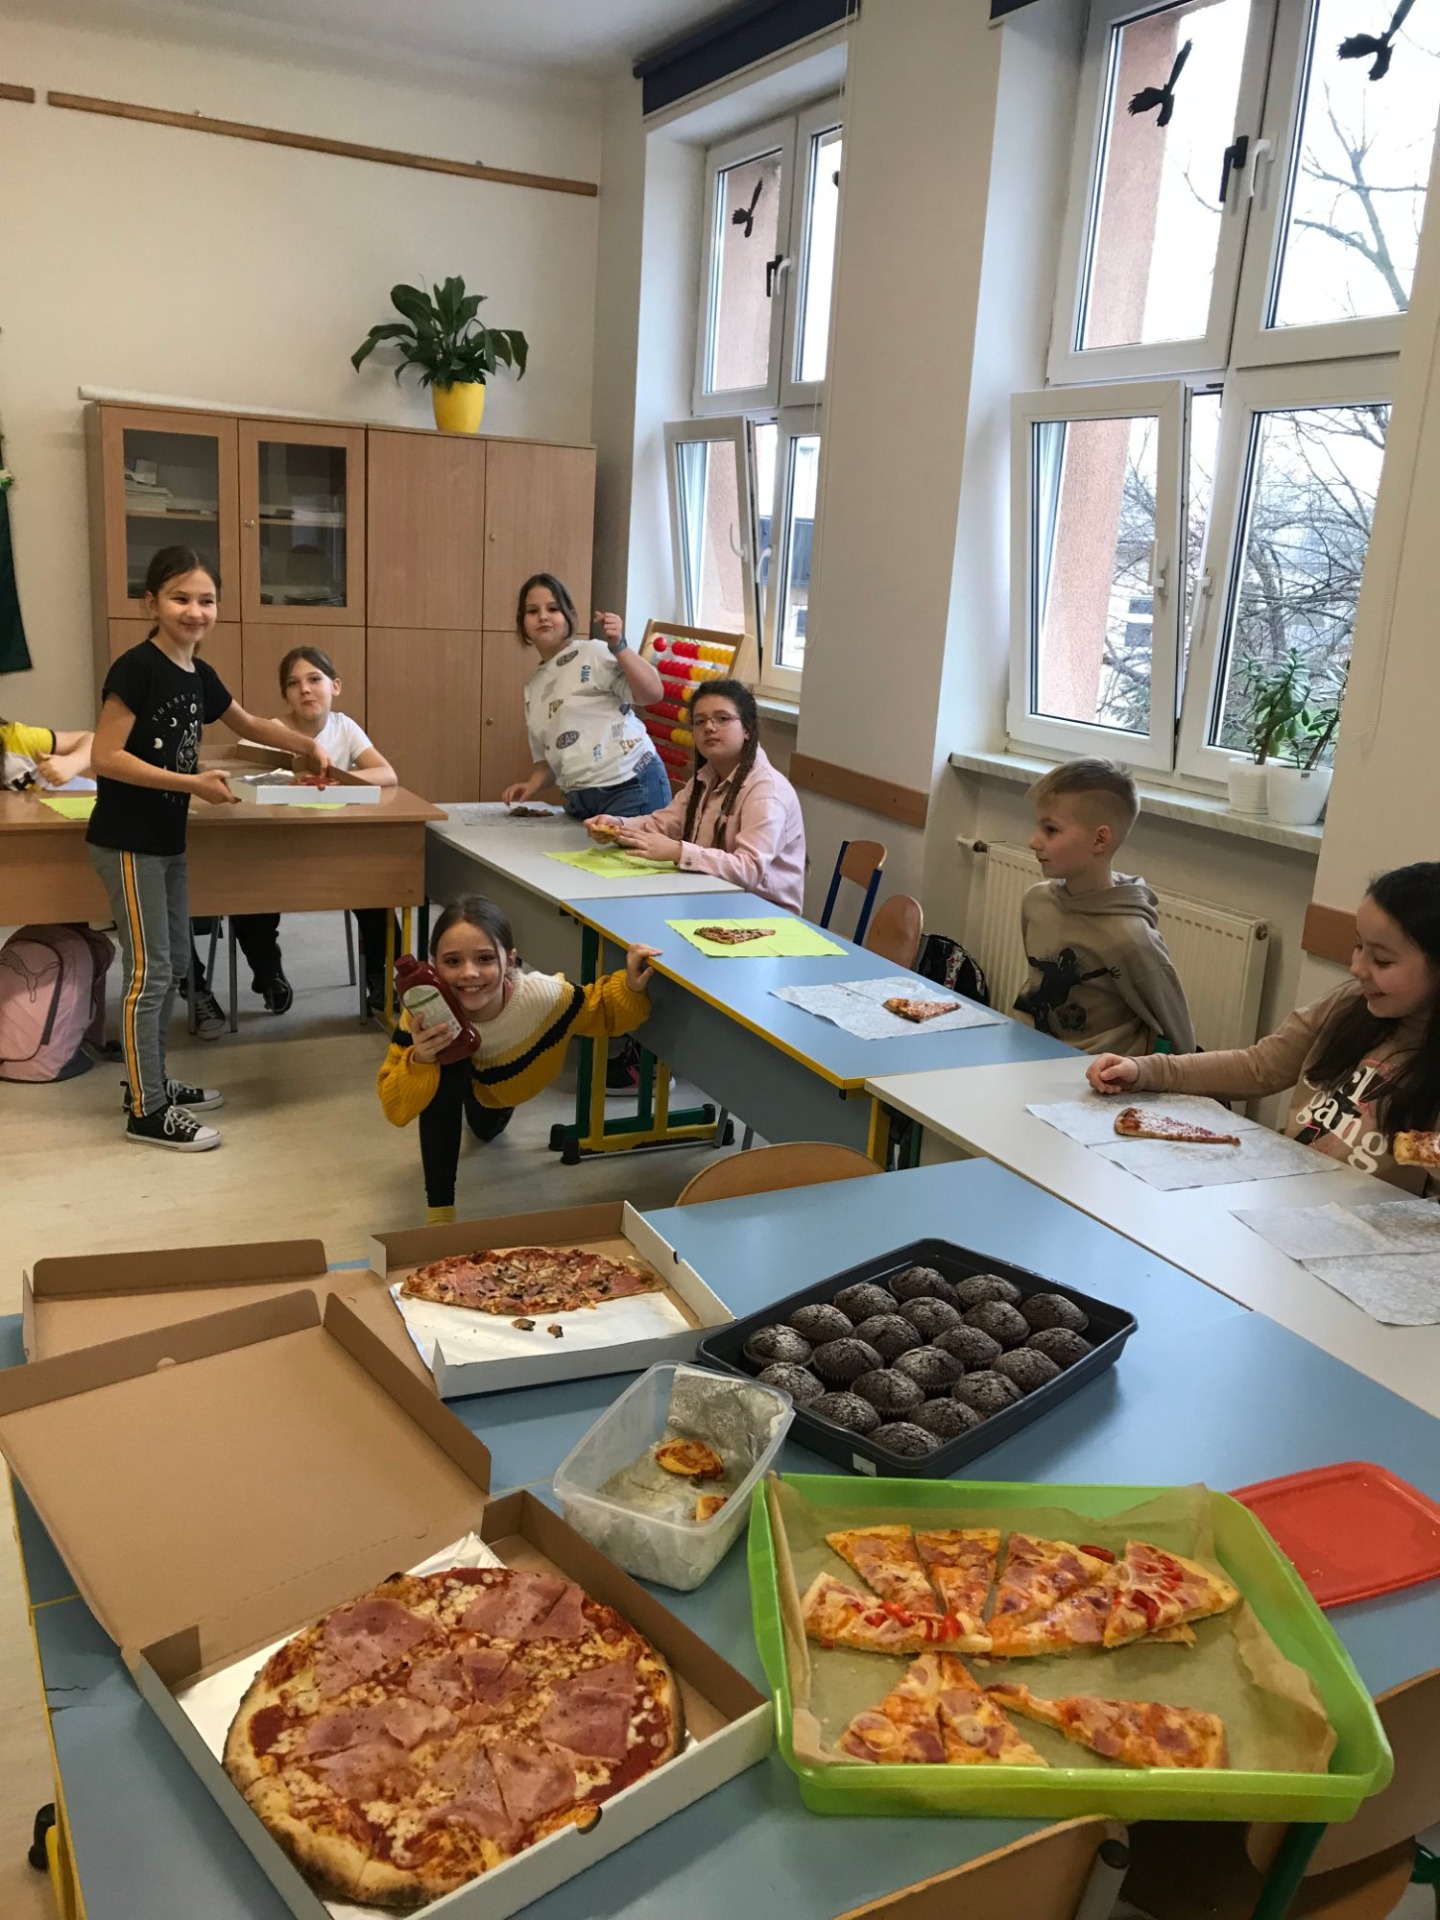 Grupa dzieci siedząca przy stole podczas poczęstunku pizzą